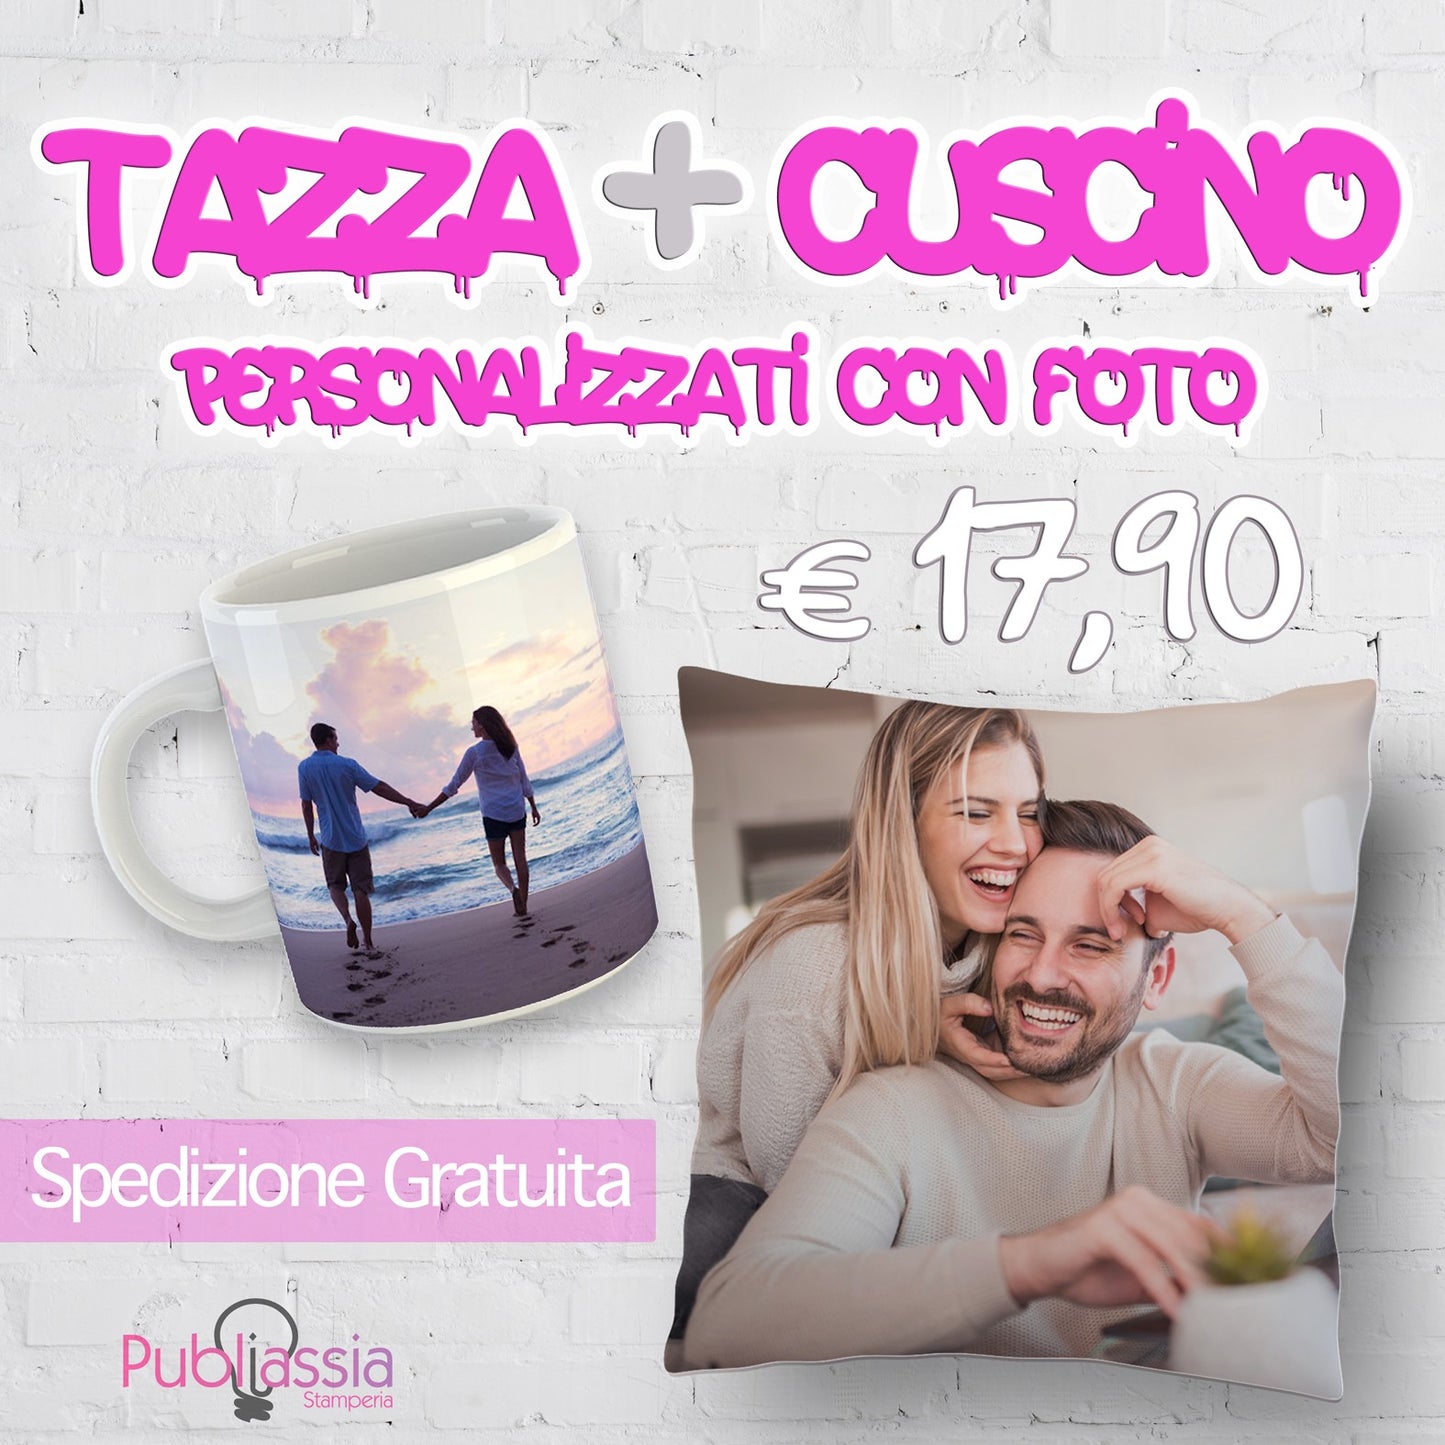 Tazza + Cuscino - personalizzati con foto